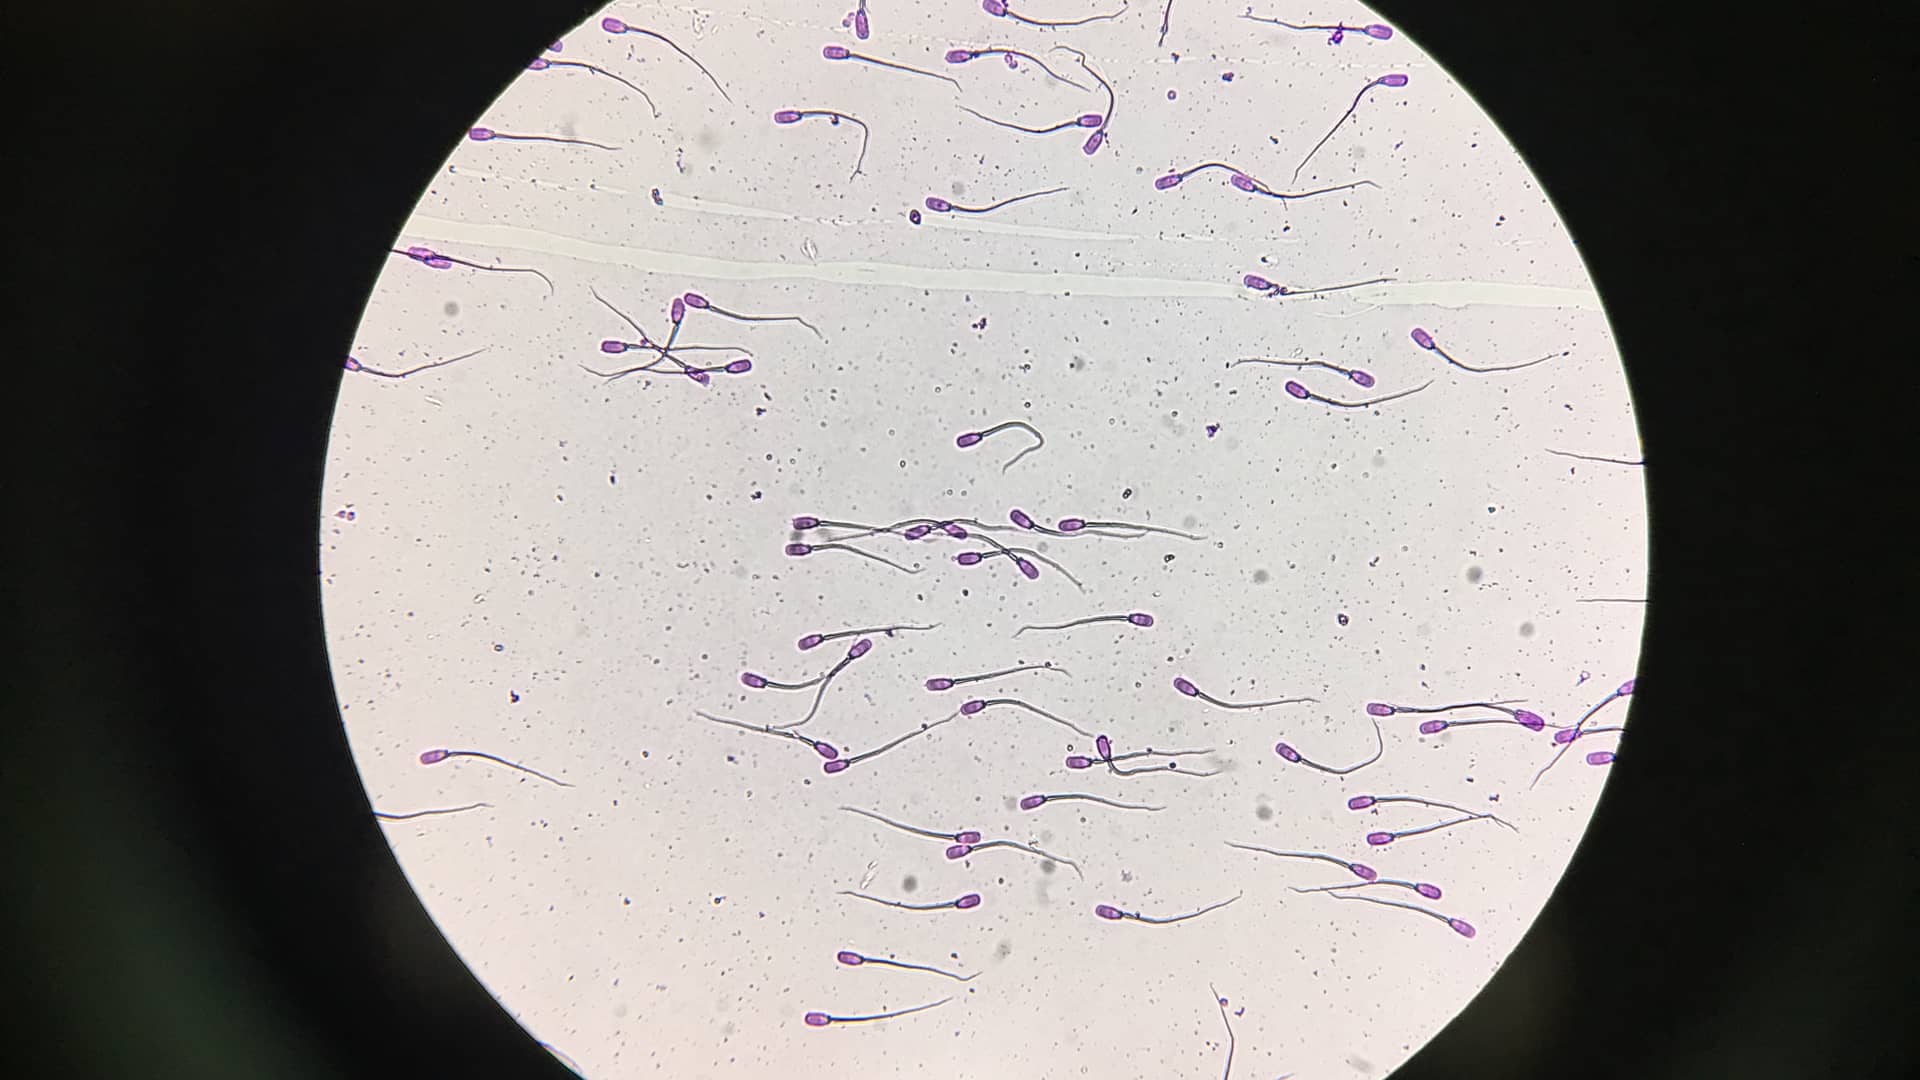 Vista en el microscopio de una muestra de semen para representar la oligoastenozoospermia que es un ejemplo de esterilidad masculina